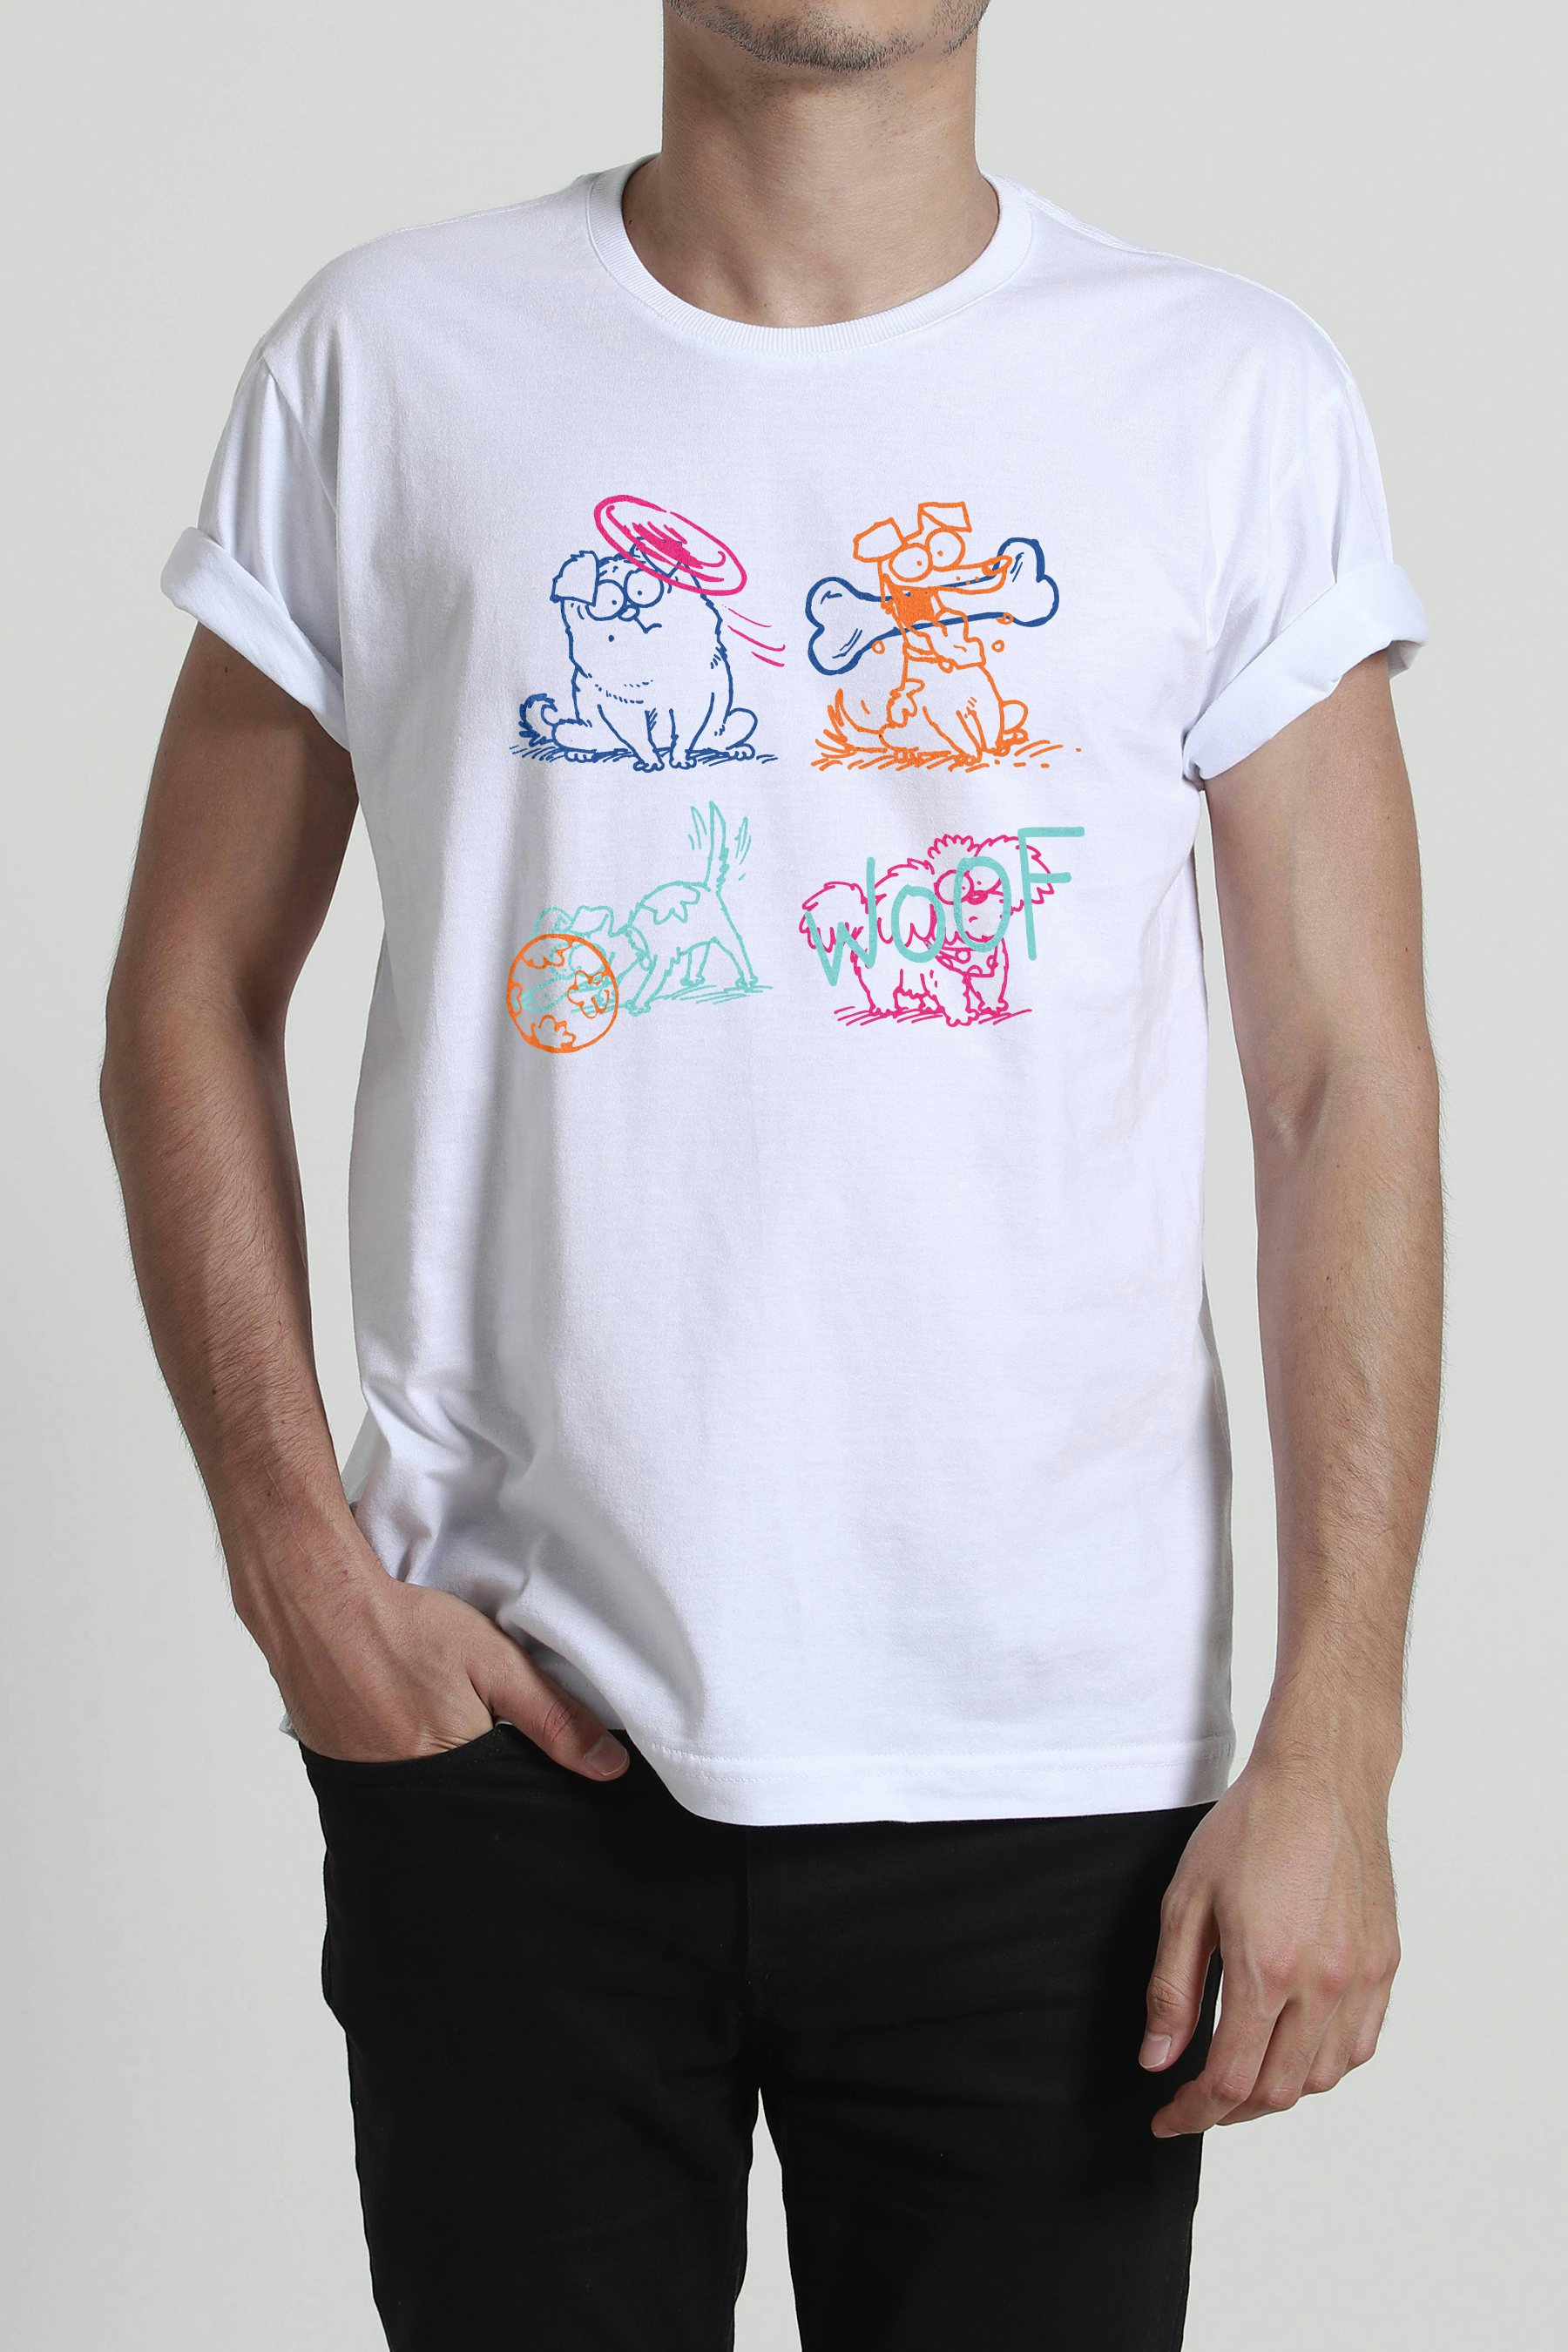 Camisetas criativas Chico Rei <strong>por até R$40</strong> e 8% de cashback